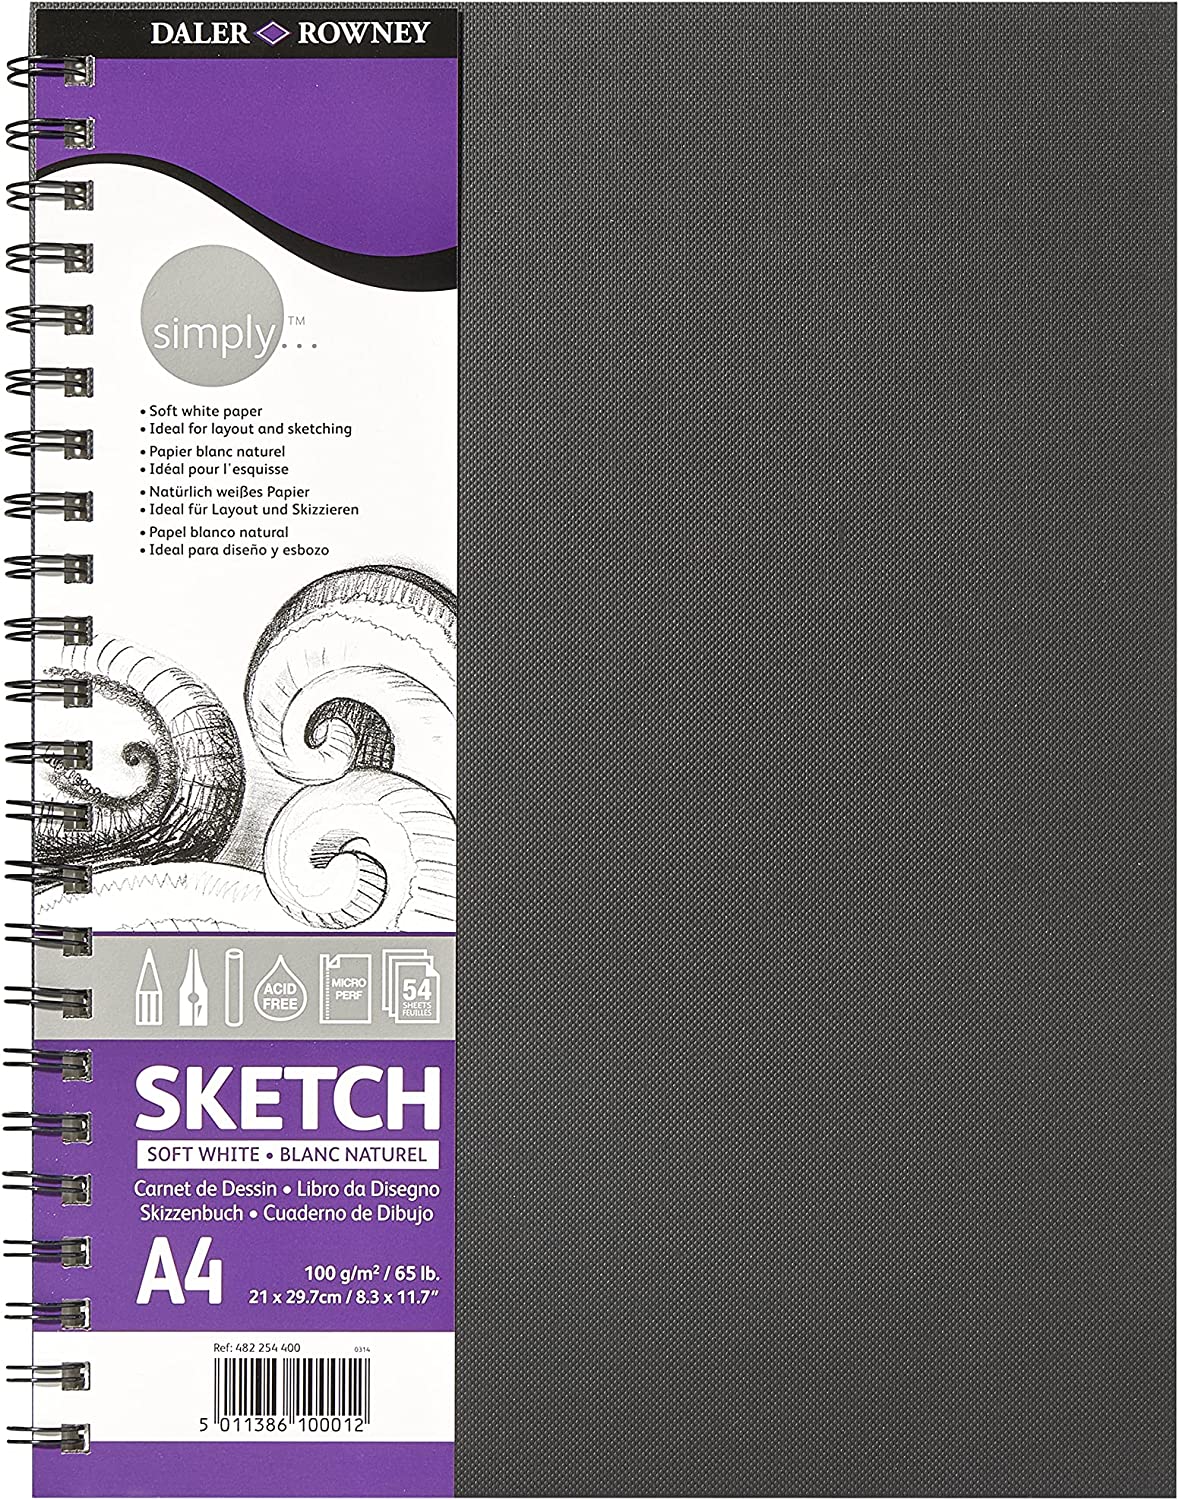 Daler Rowney Simply Cuaderno de Dibujo A4 100g/m2 - Cubierta Rigida con Encuadernacion en Espiral - 